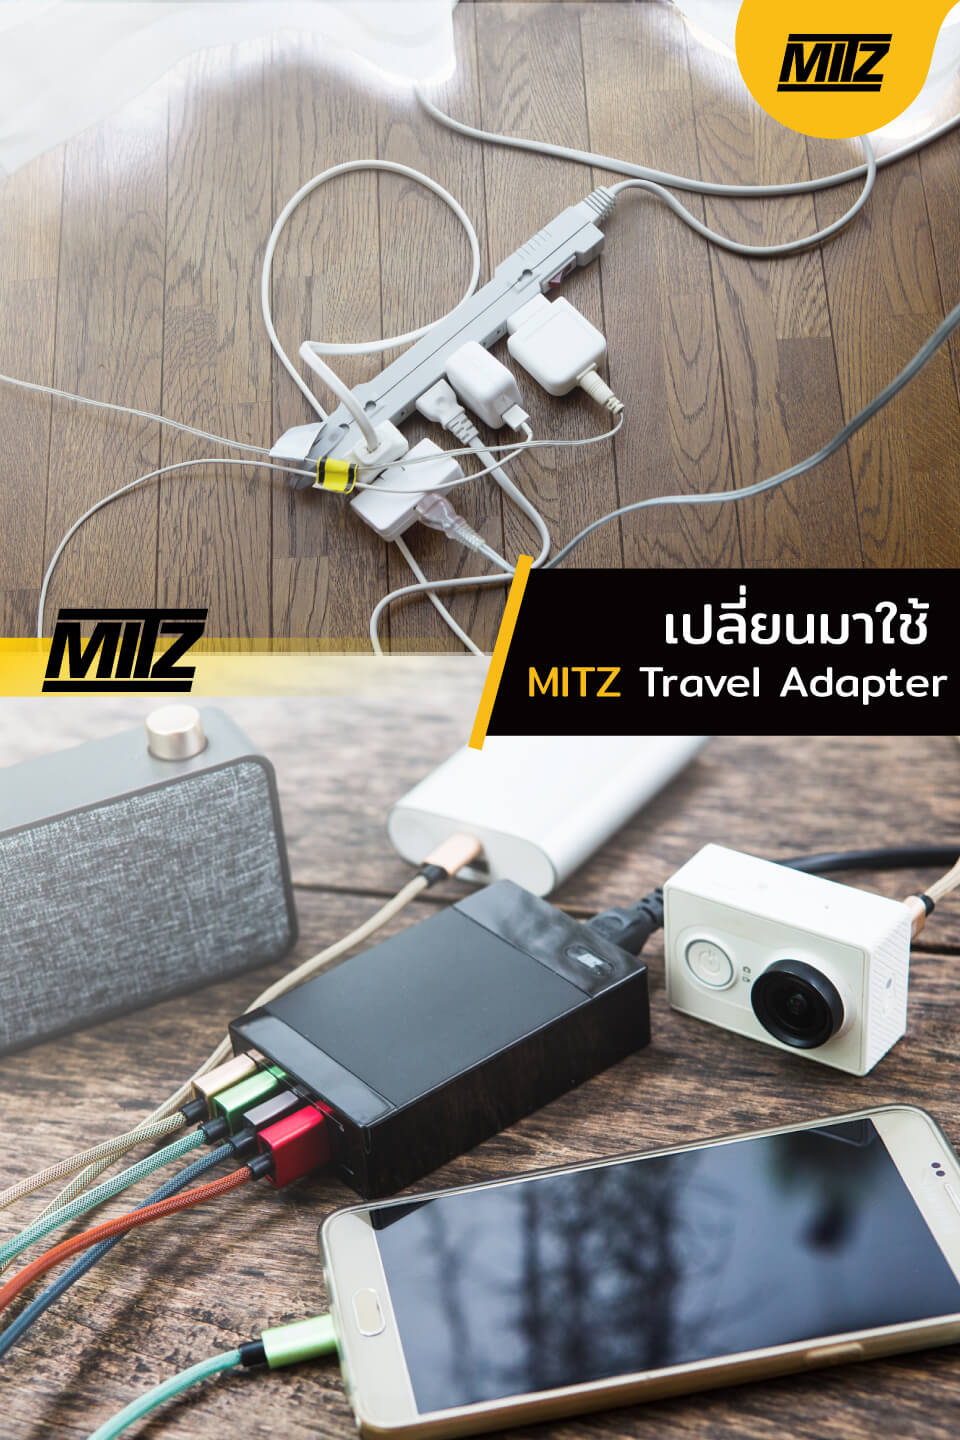 MITZ Travel Adapter - ชาร์จมือถือ/Powerbank 5 เครื่อง (สบายกว่า ปลั๊กพ่วง) เบา เที่ยวง่าย